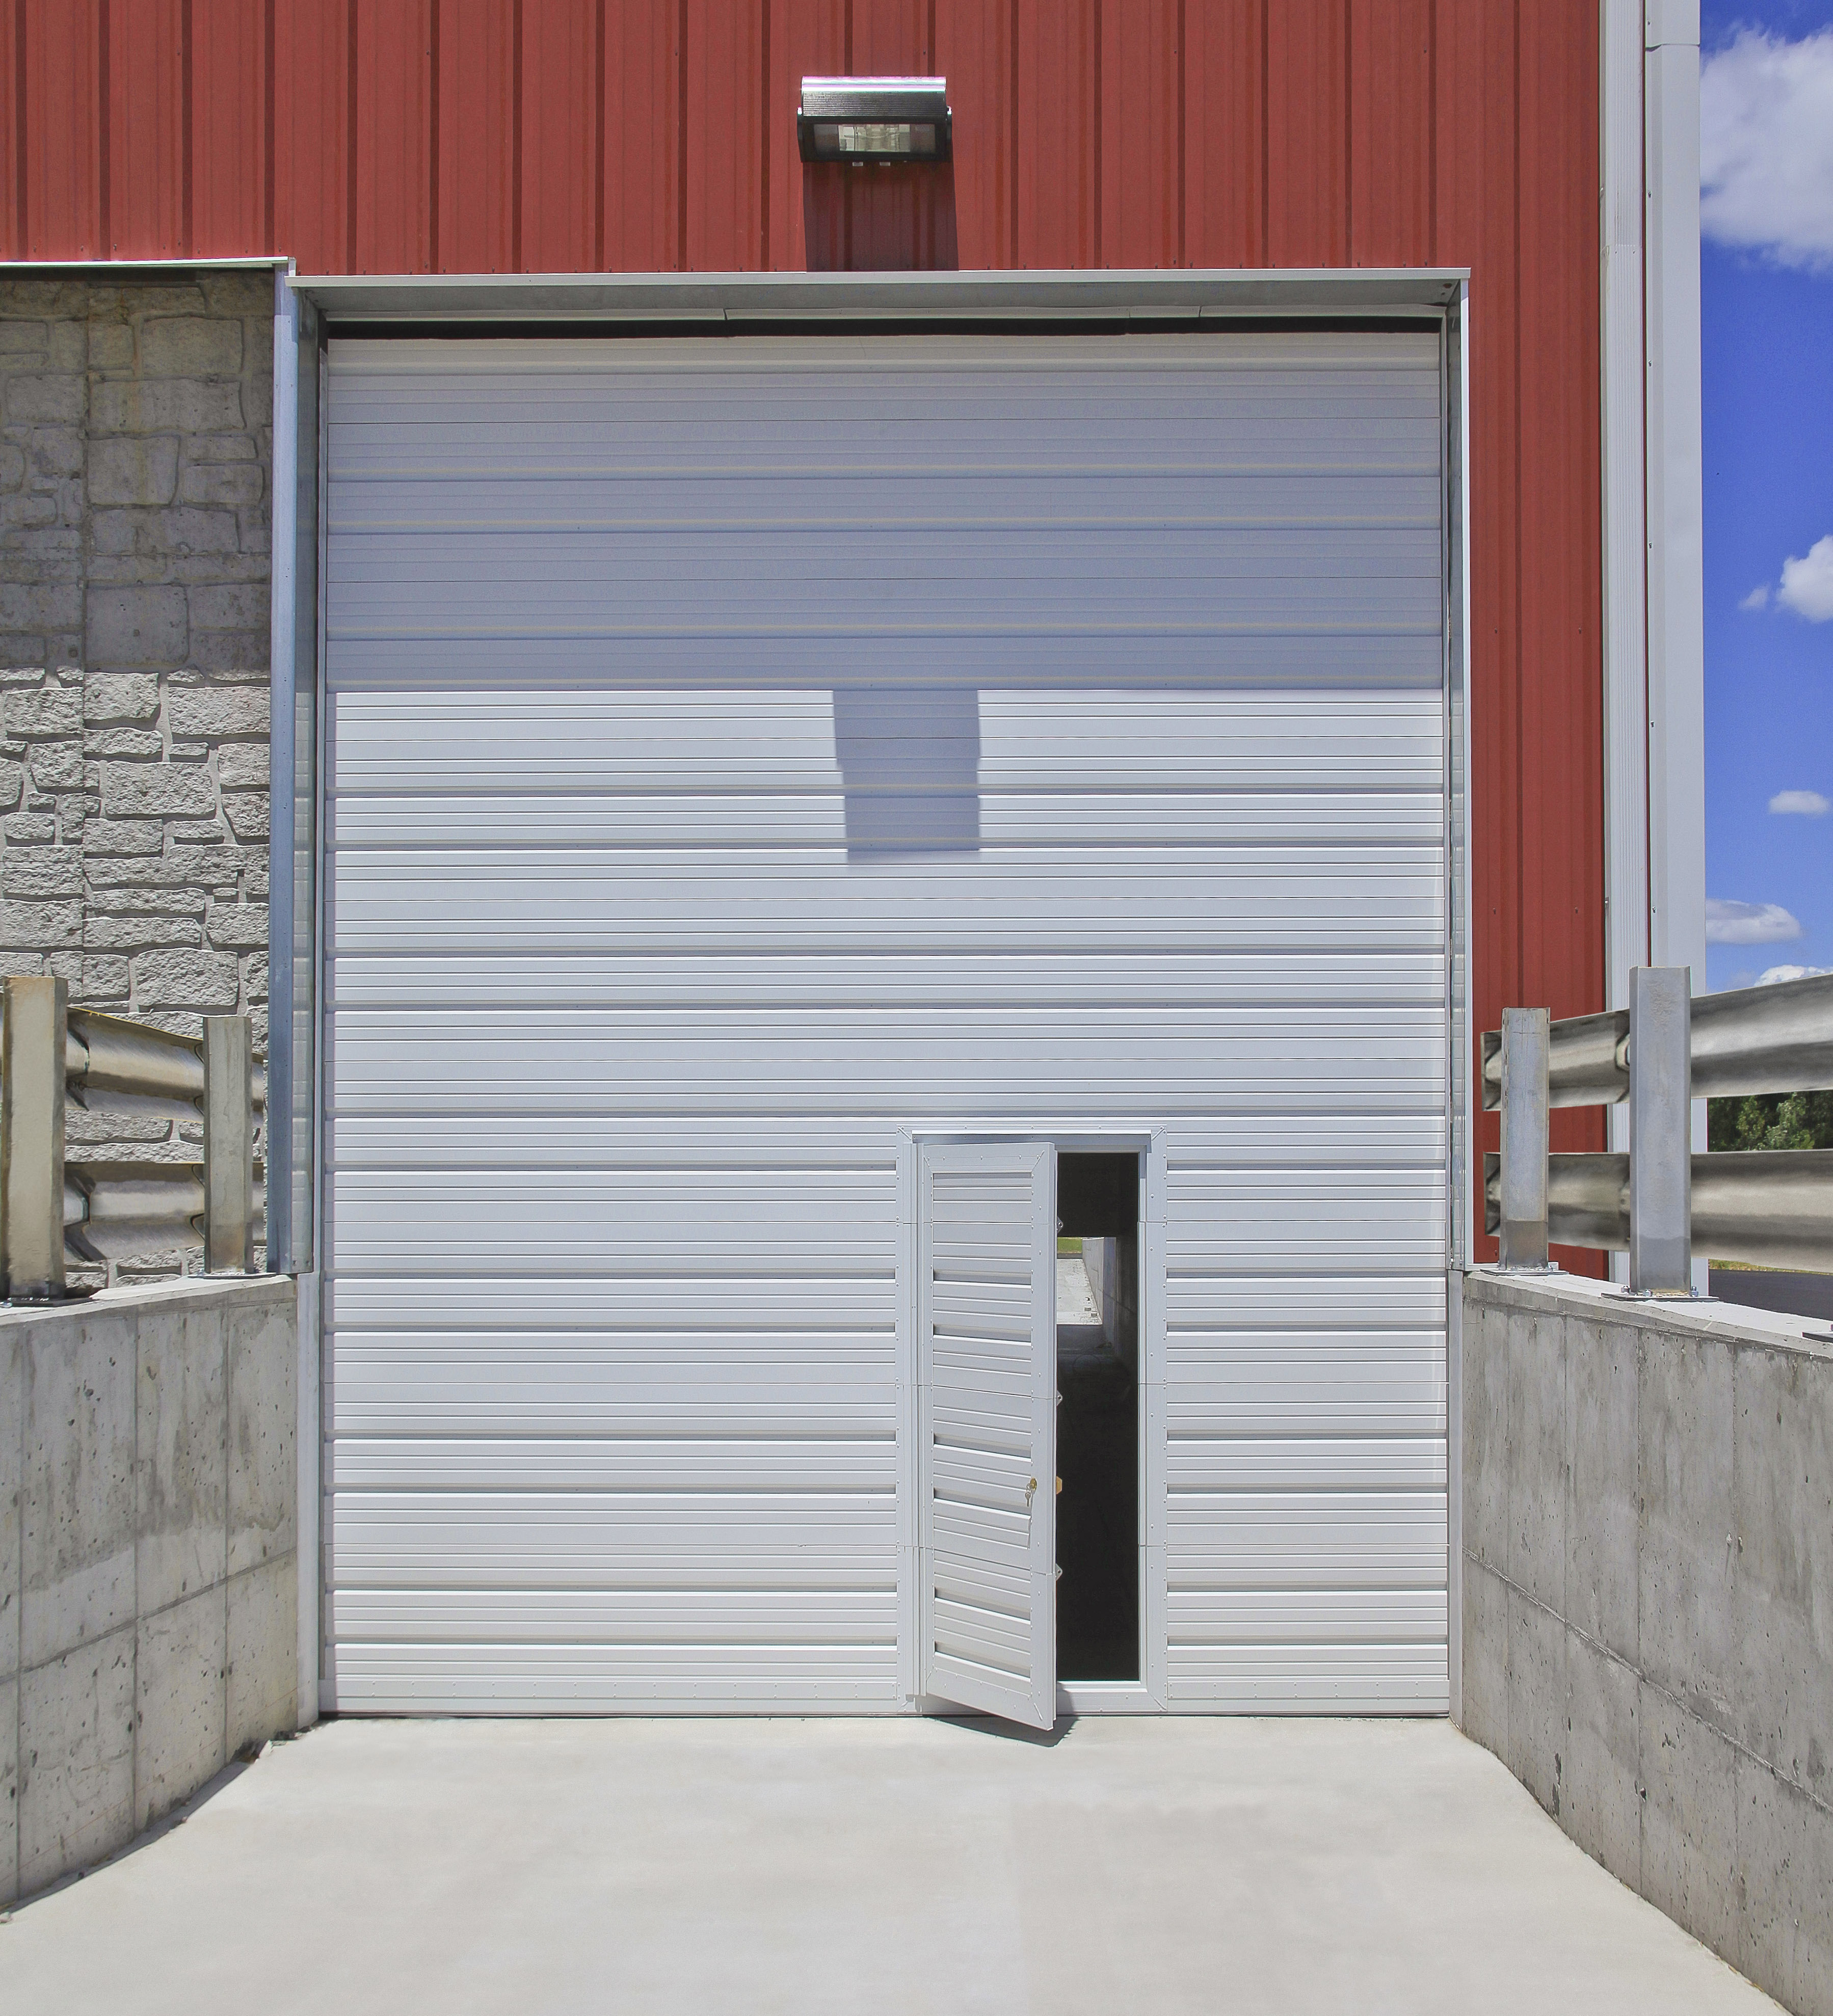 500 series garage door with entry door